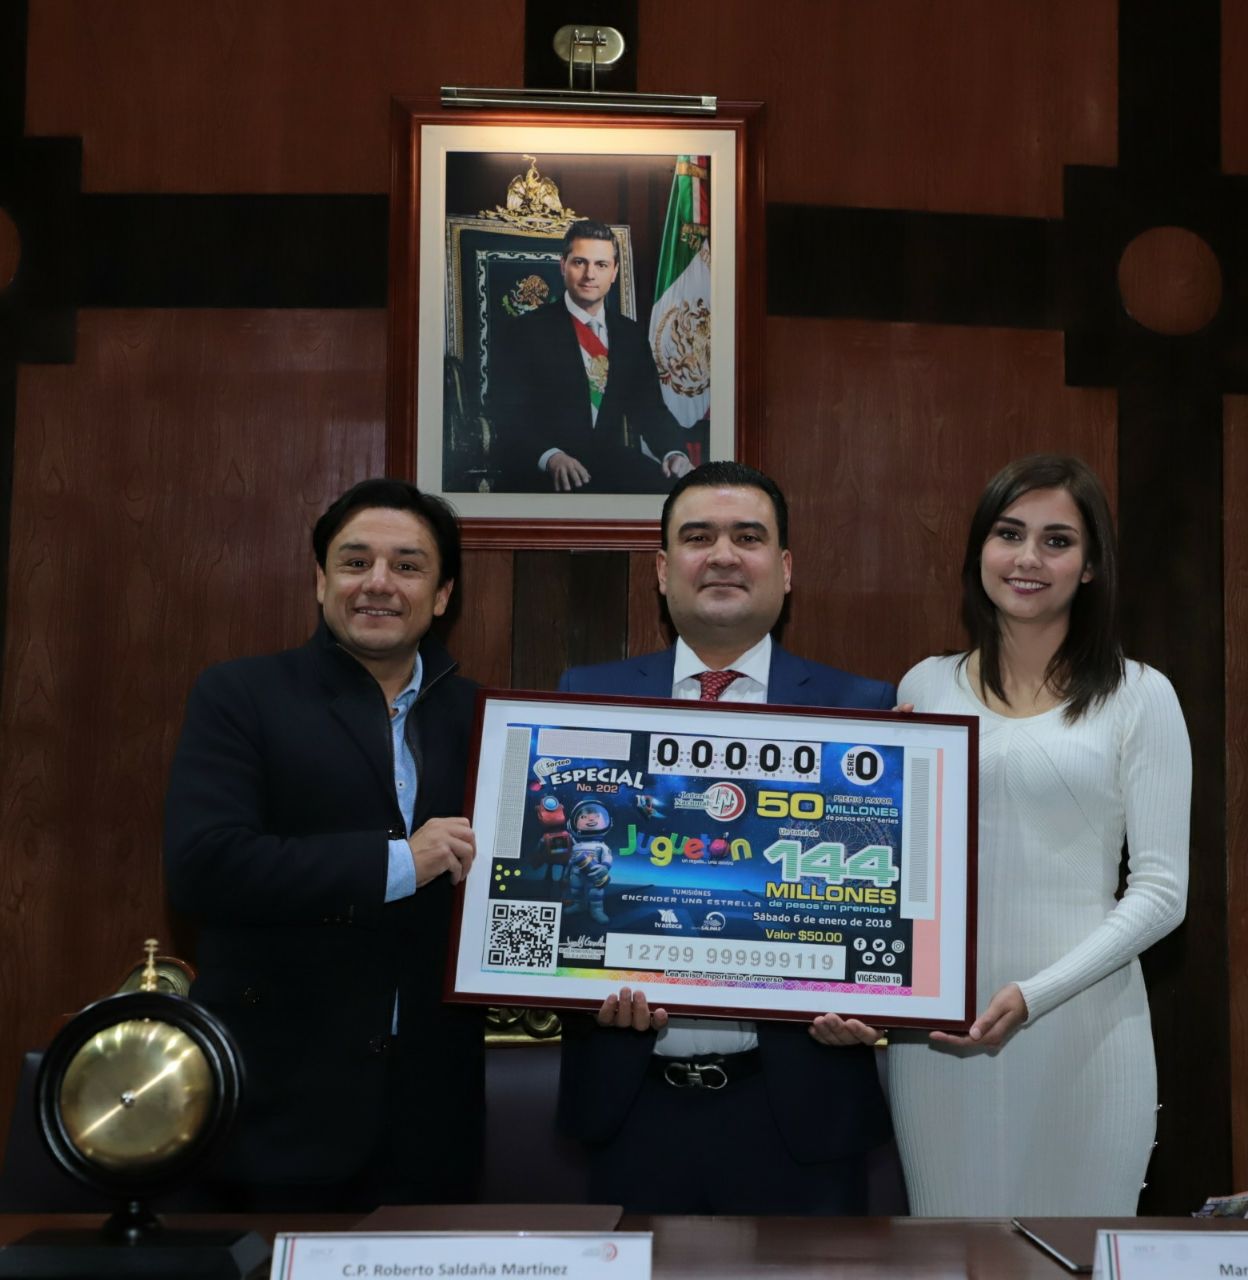 Fotografía mostrando el billete de Juguetón 2018 acompañado a Roberto Saldaña los conductores Esteban Macías y Maríana Iparrea.